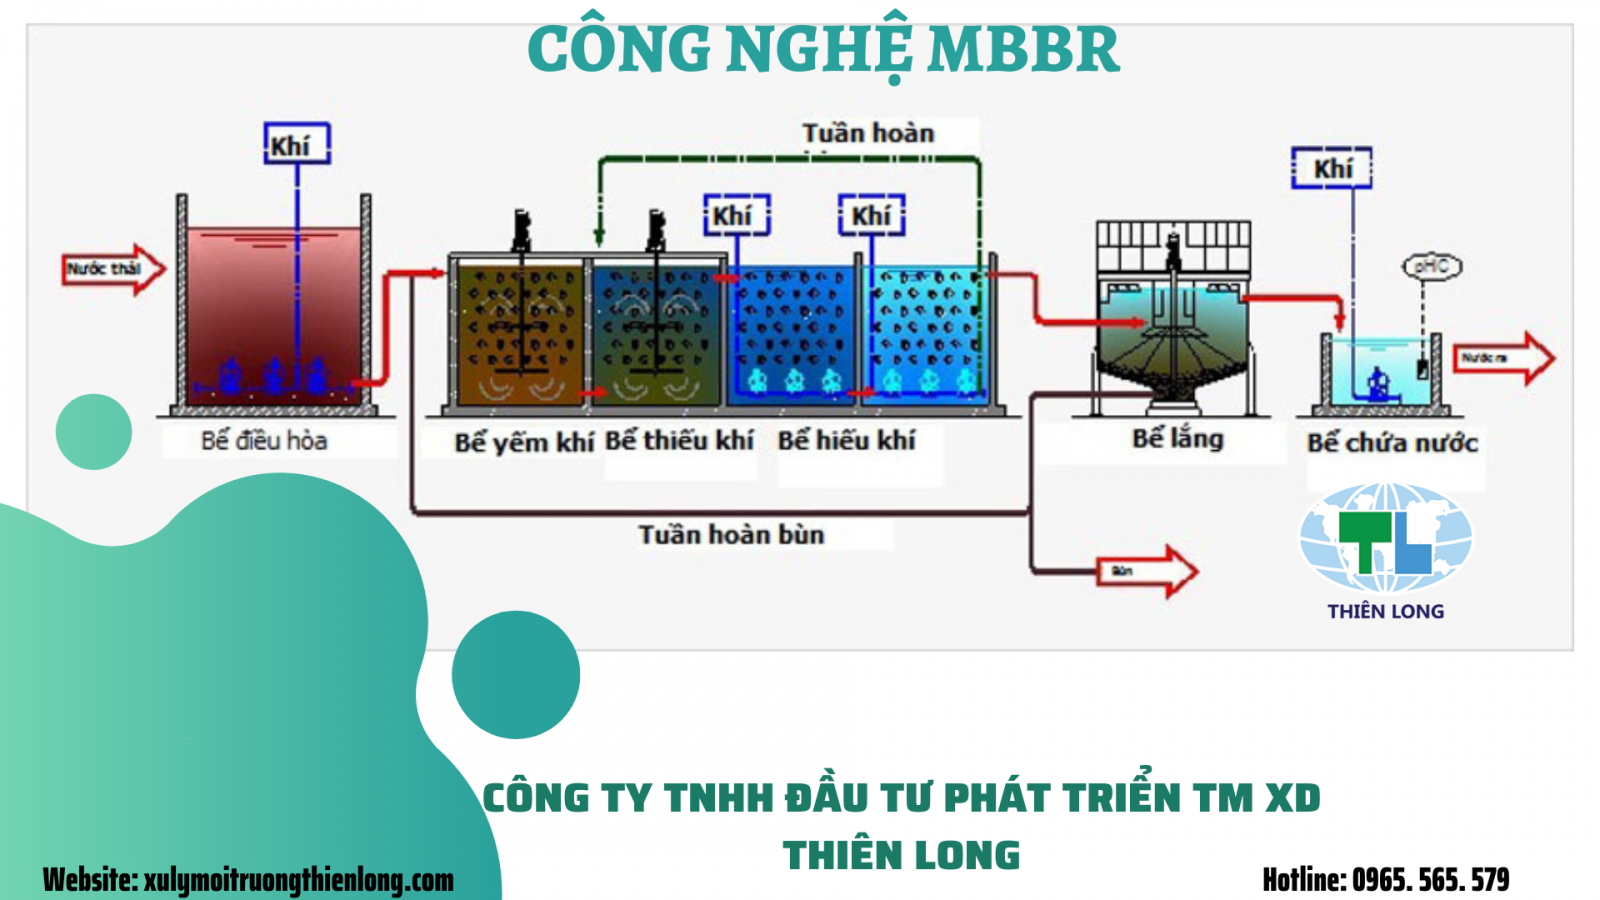 MBBR - Công nghệ xử lý nước thải sinh hoat